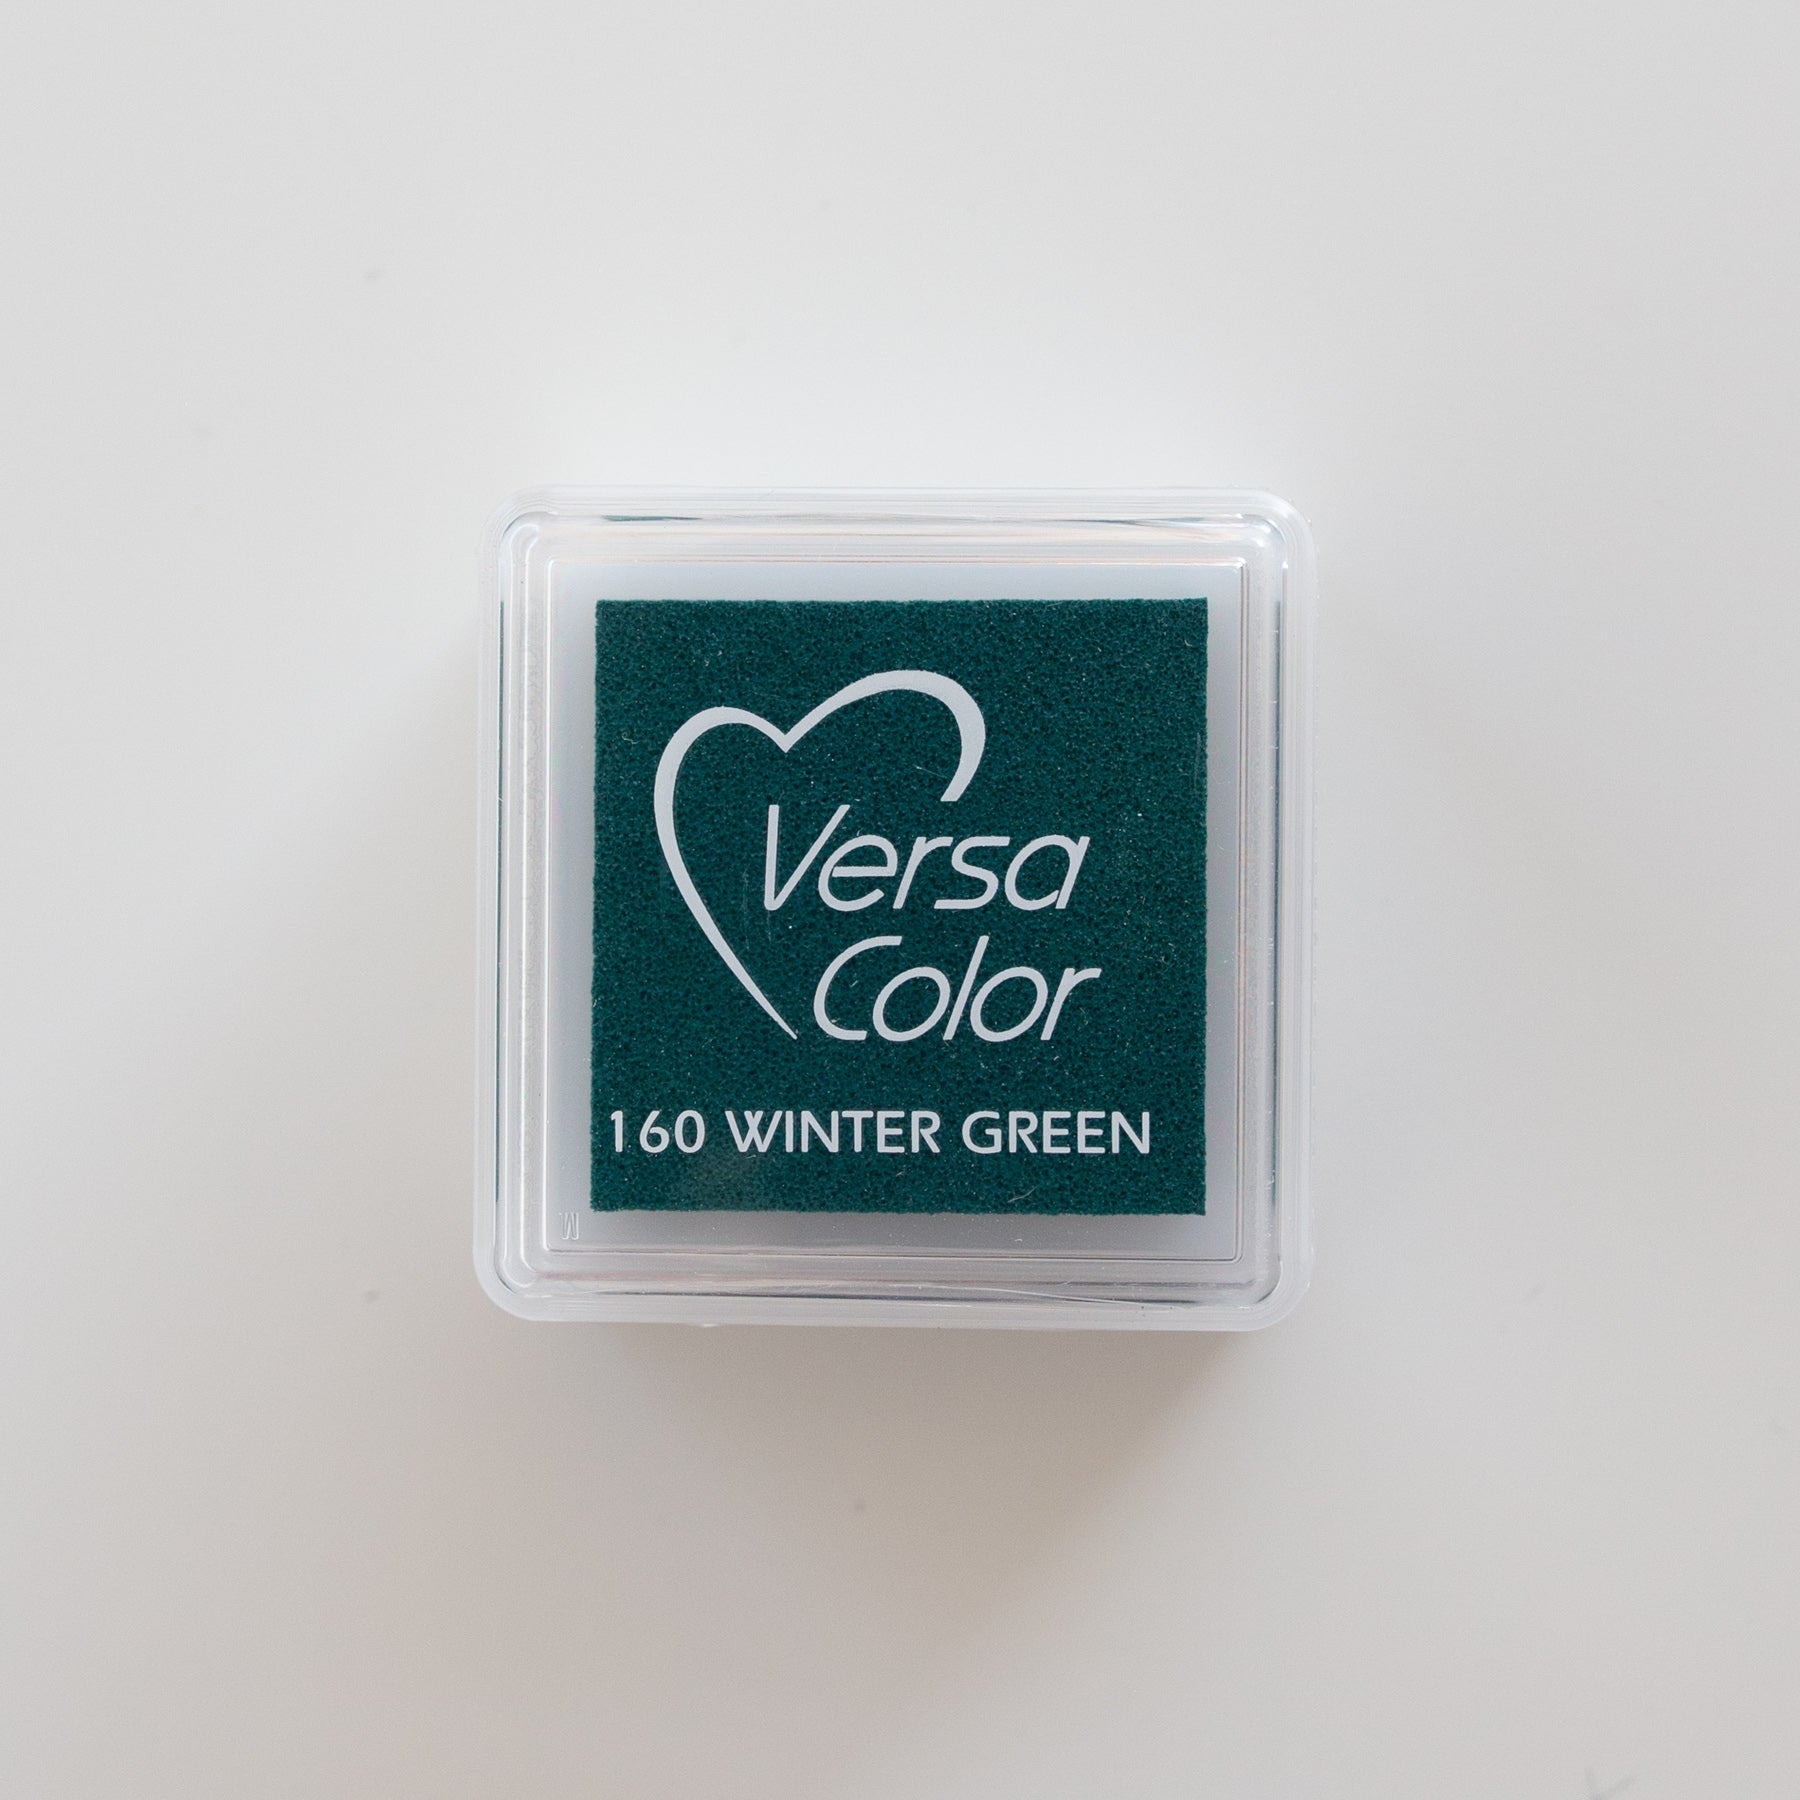 VersaColor 1" 160 Winter Green